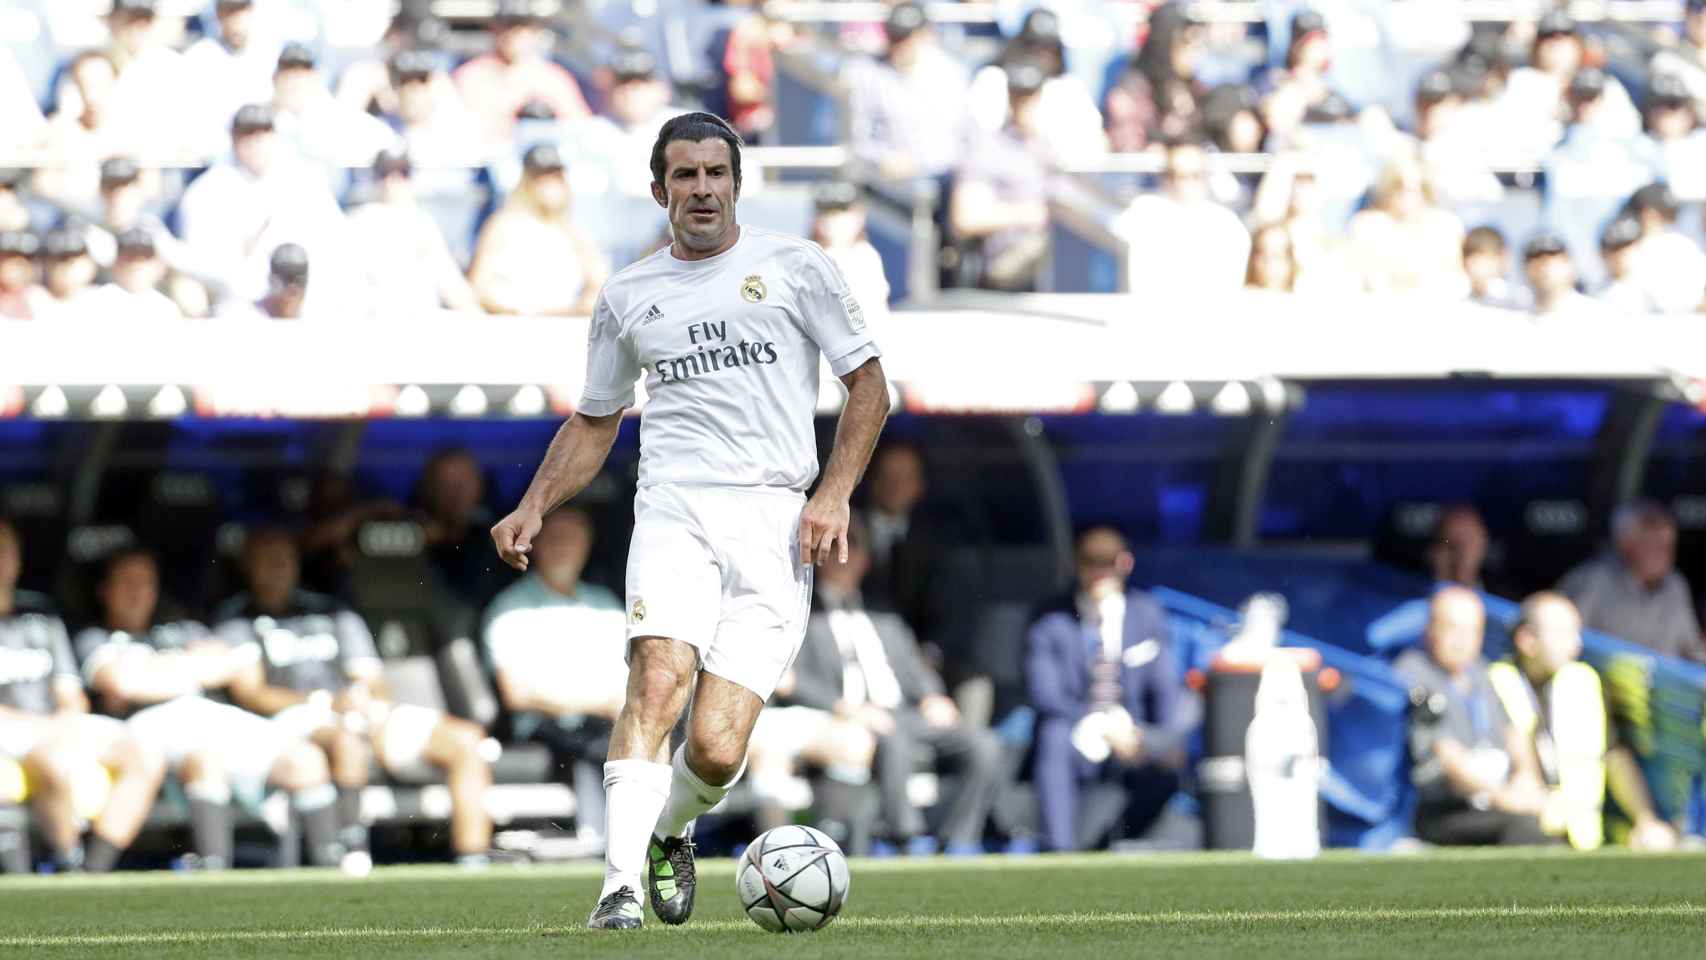 Figo participó este año en un partido benéfico con la camiseta del Real Madrid